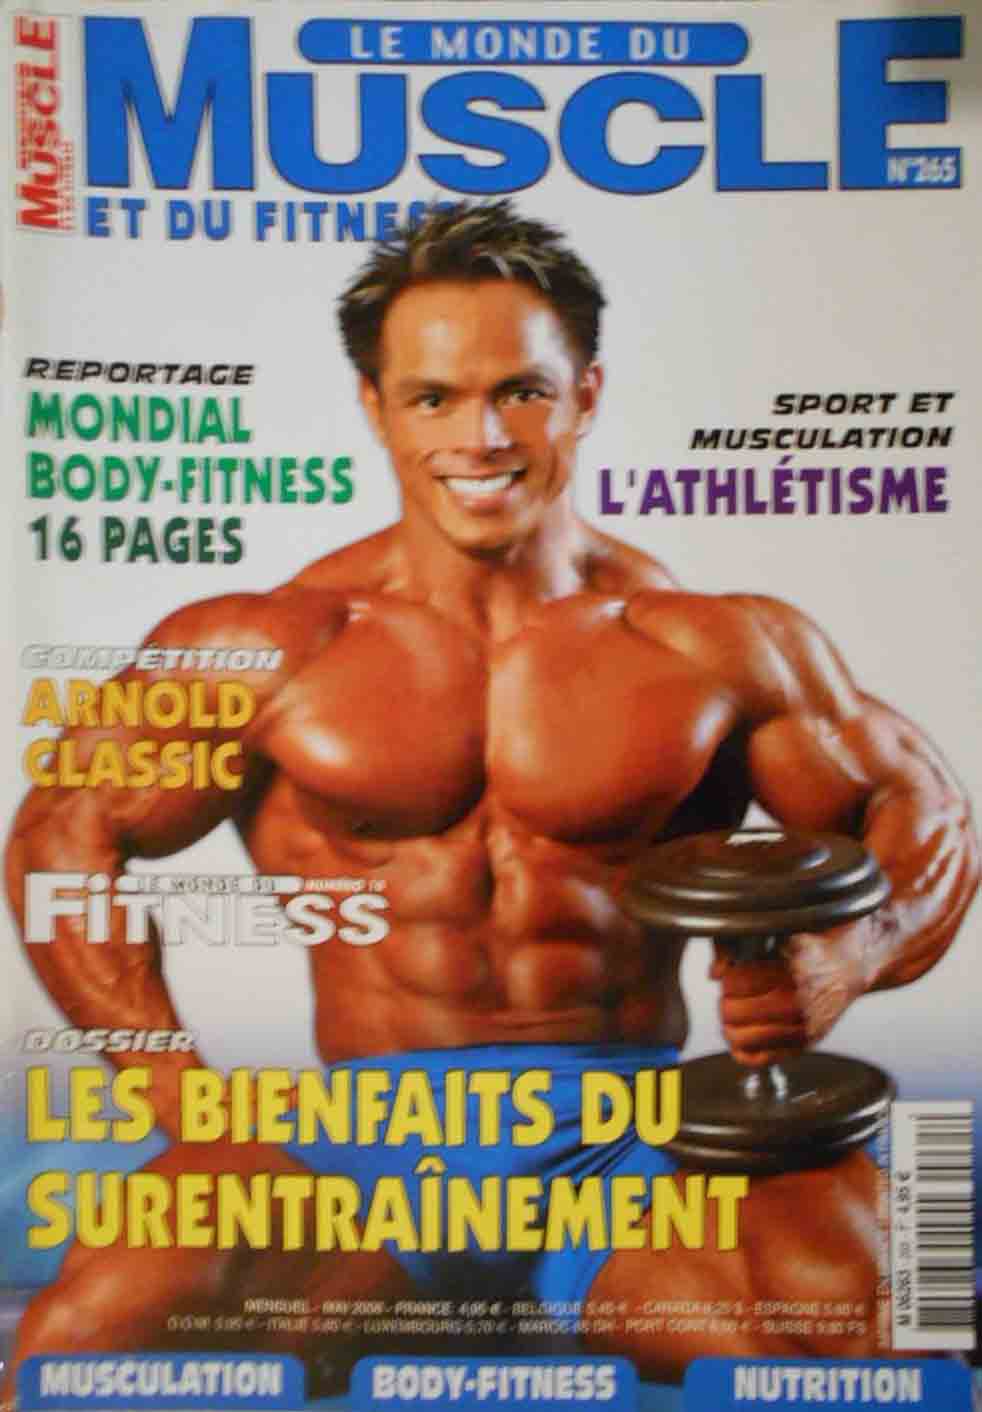 Le Monde du Muscle # 265 magazine back issue Le Monde du Muscle magizine back copy 